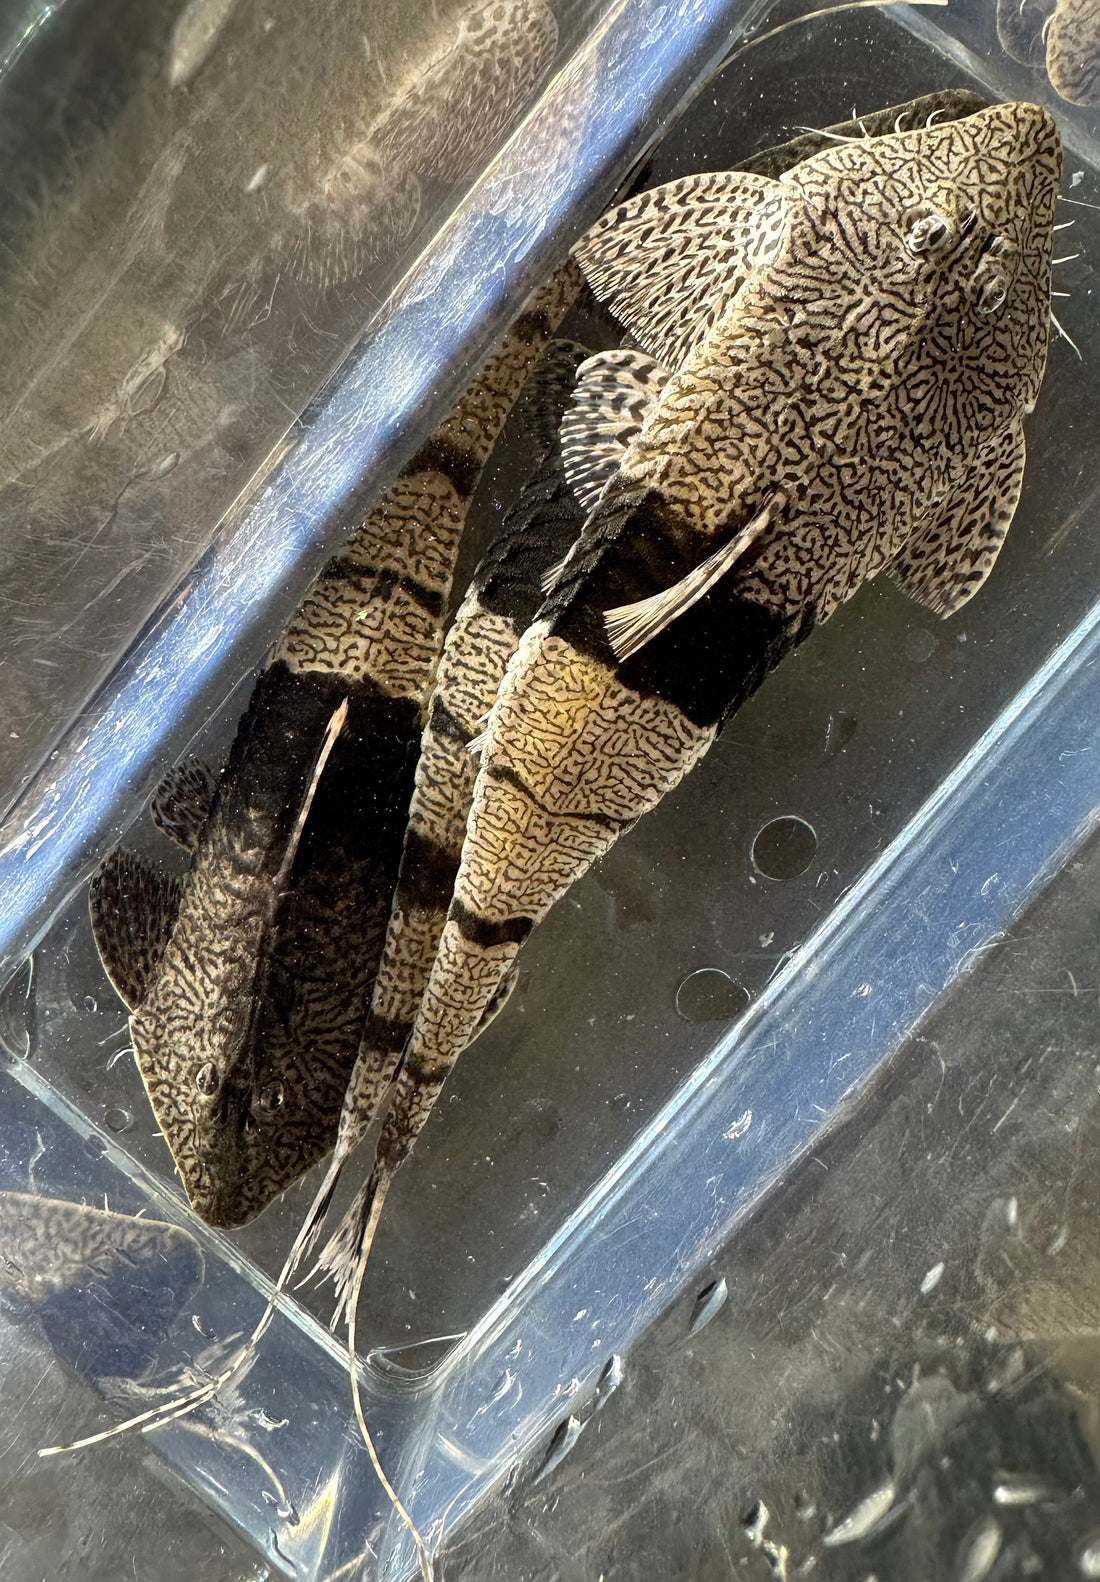 Chameleon Whiptail (5”)